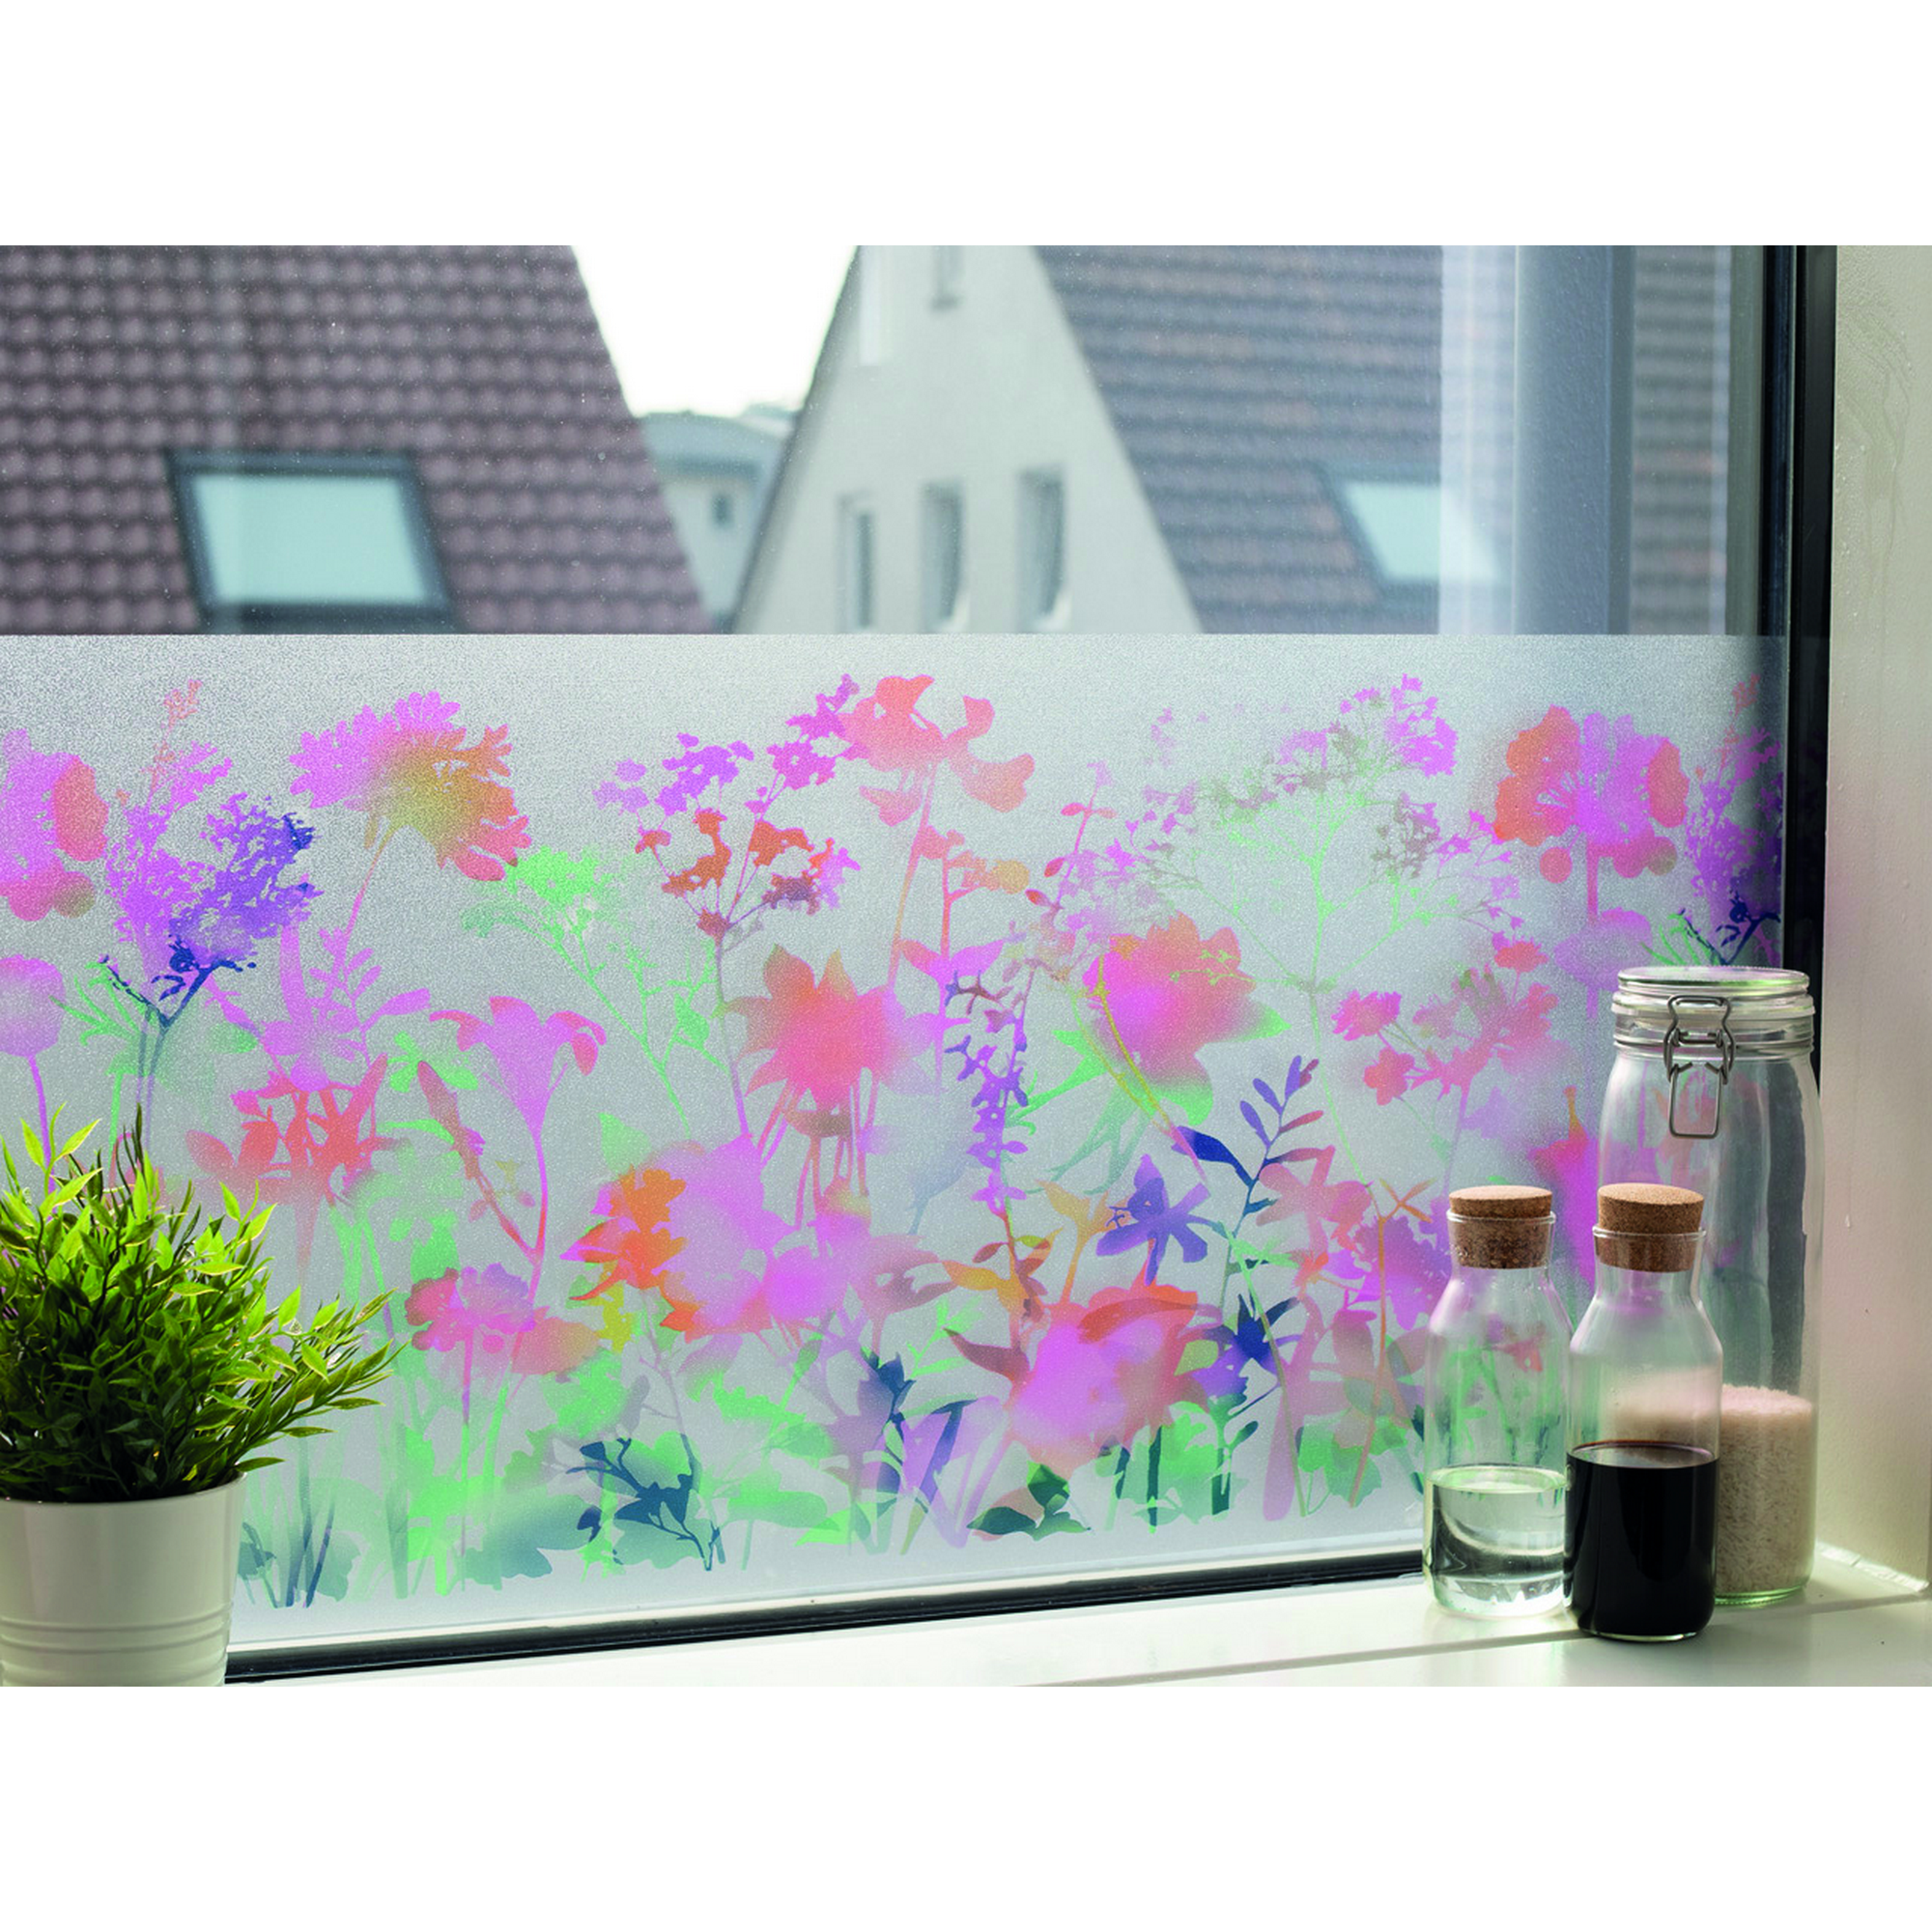 Sichtschutzfolie 'Static Premium' mira-mehrfarbig 150 x 45 cm + product picture